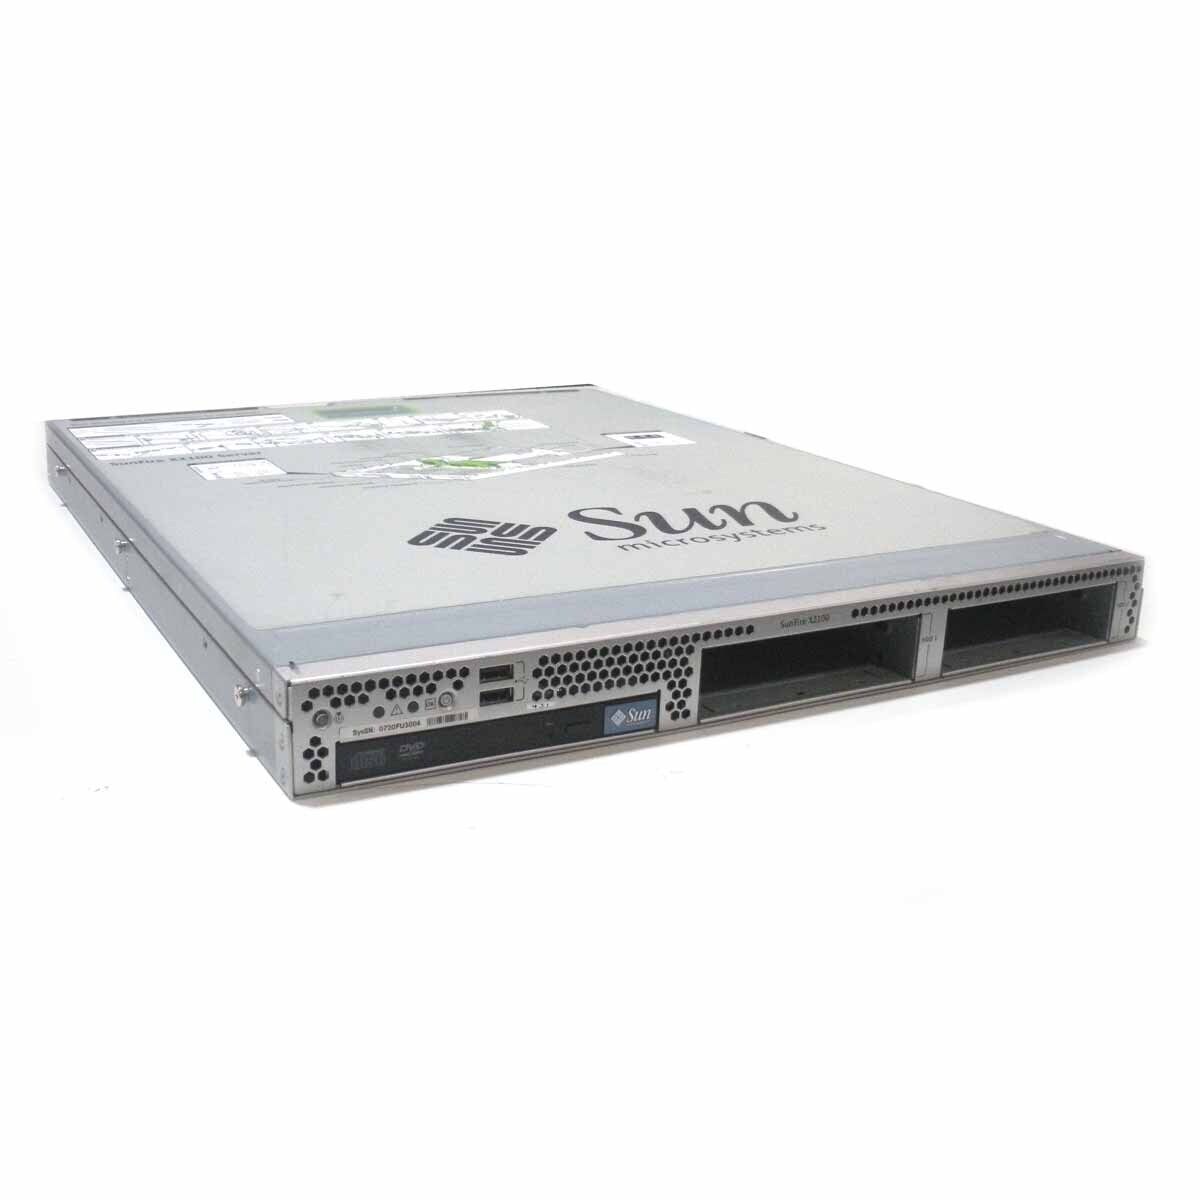 Sun X2100 A75 Server w/2.4GHz 2GB RAM